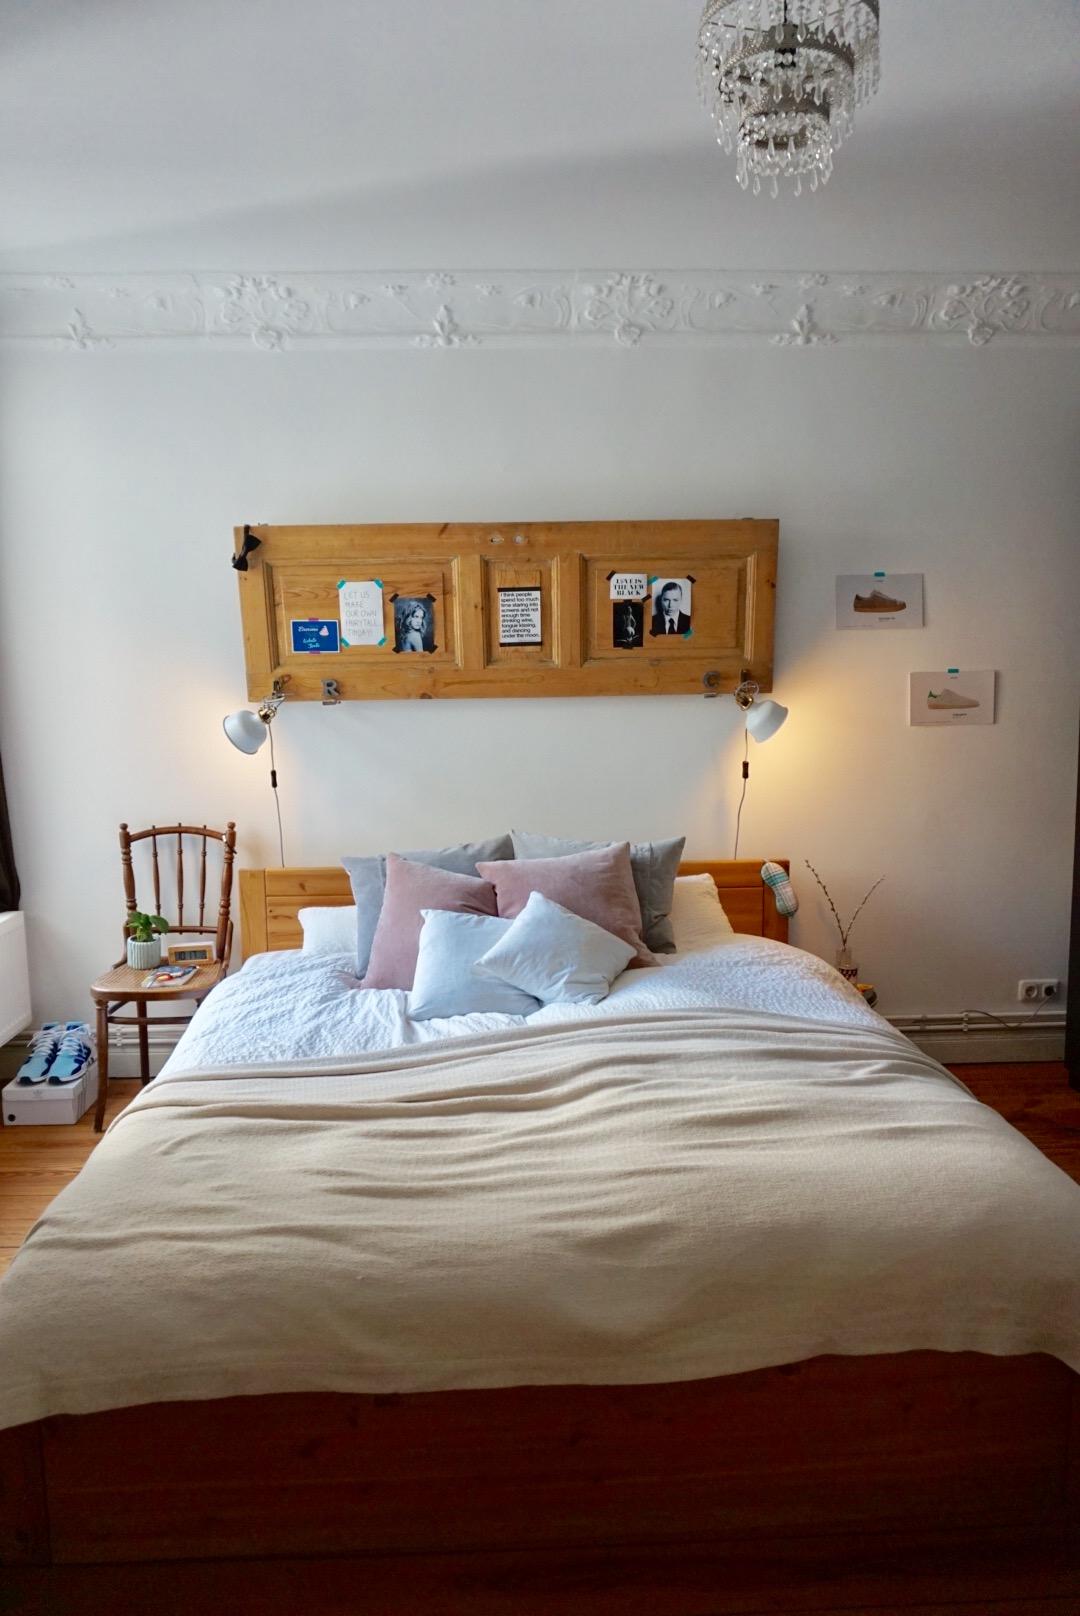 Blick ins #schlafzimmer mit einem meiner liebsten #dekostücke... die #holztür 💛 #altbauliebe